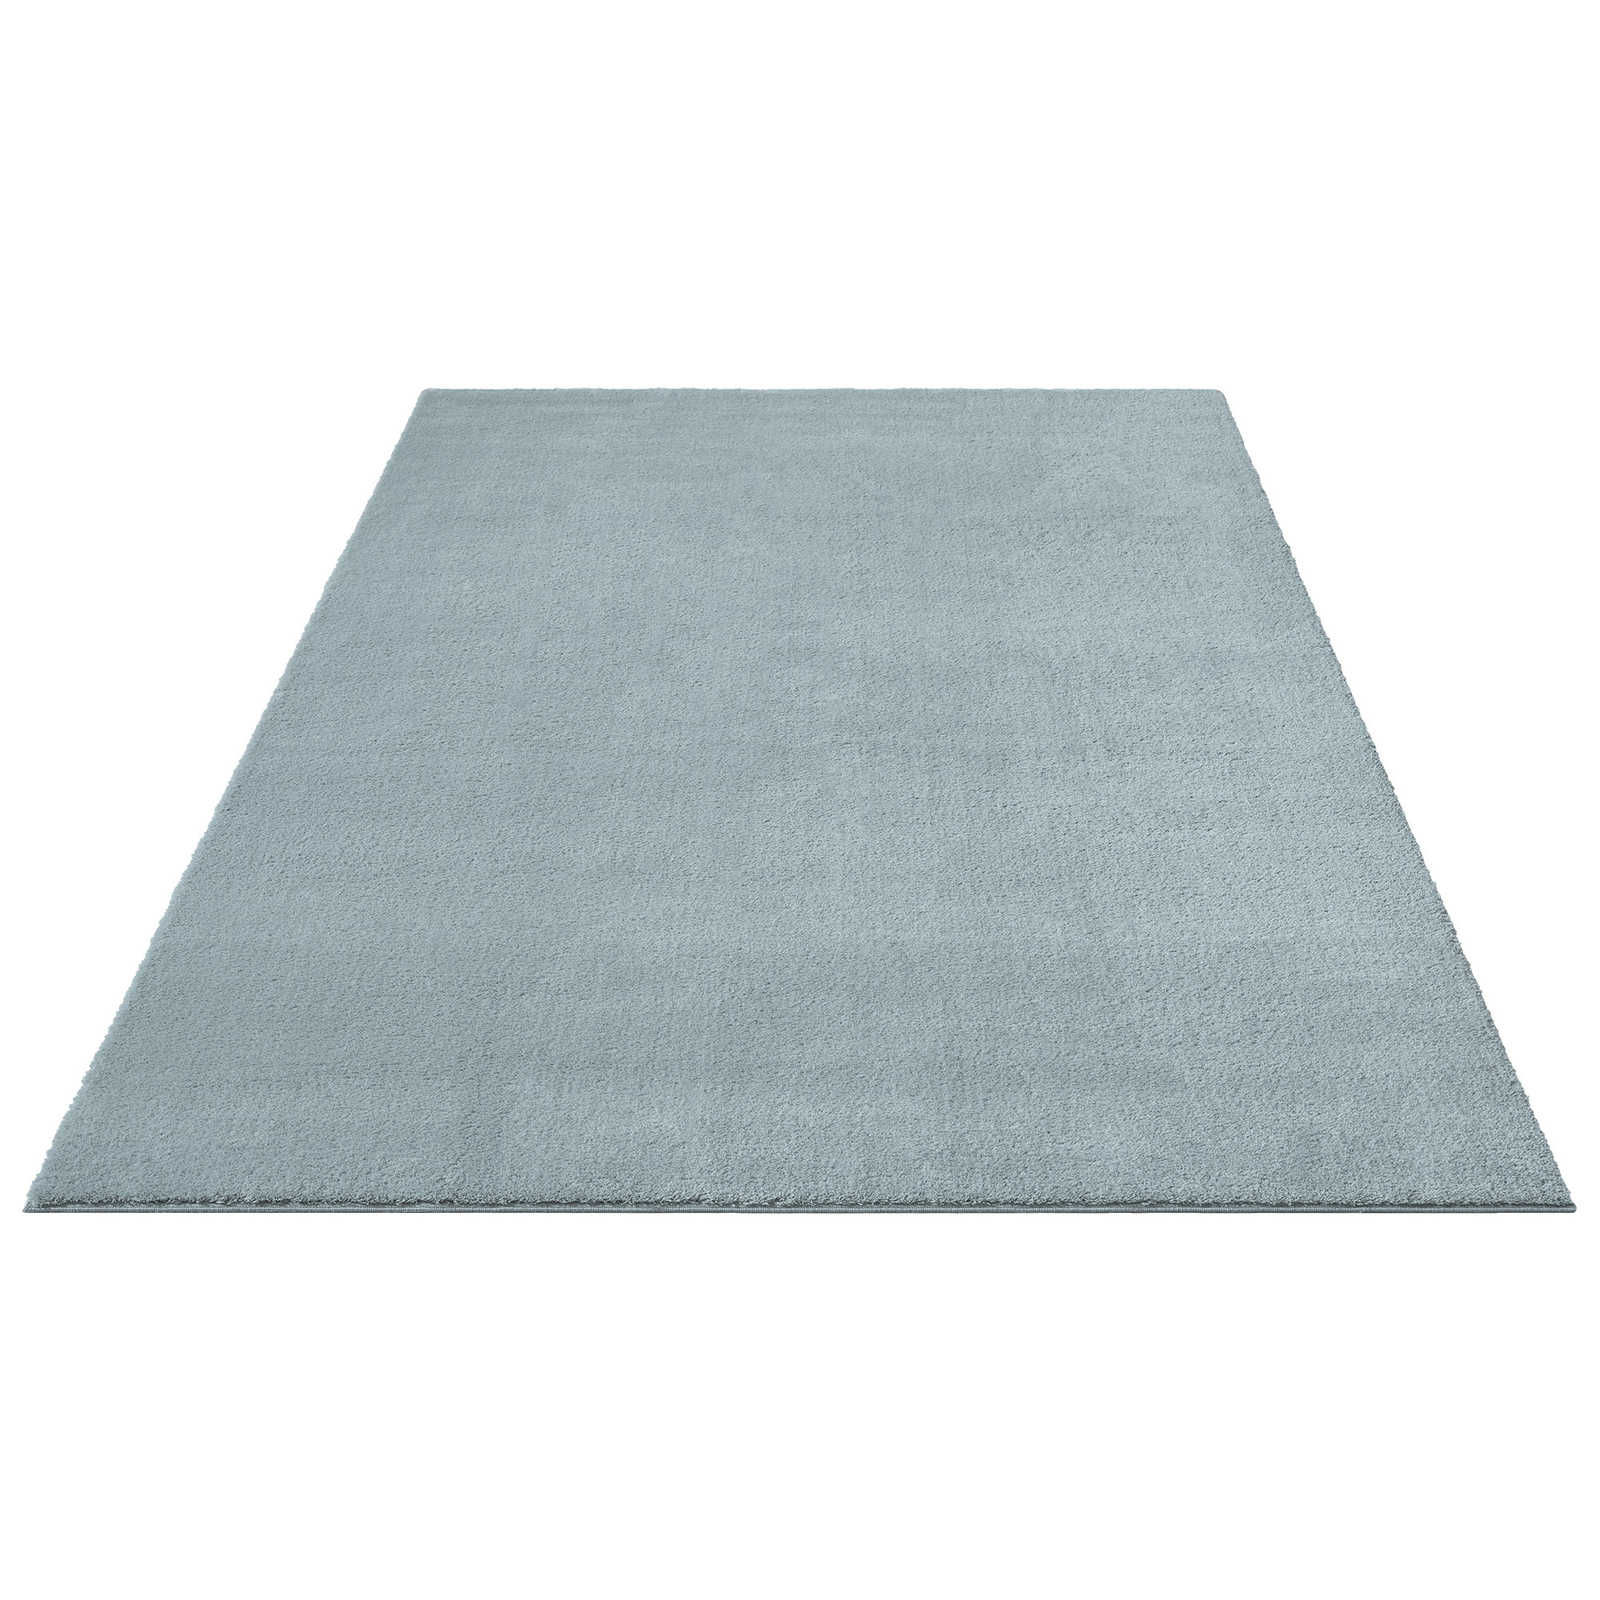 Flauschiger Hochflor Teppich in Blau – 340 x 240 cm
